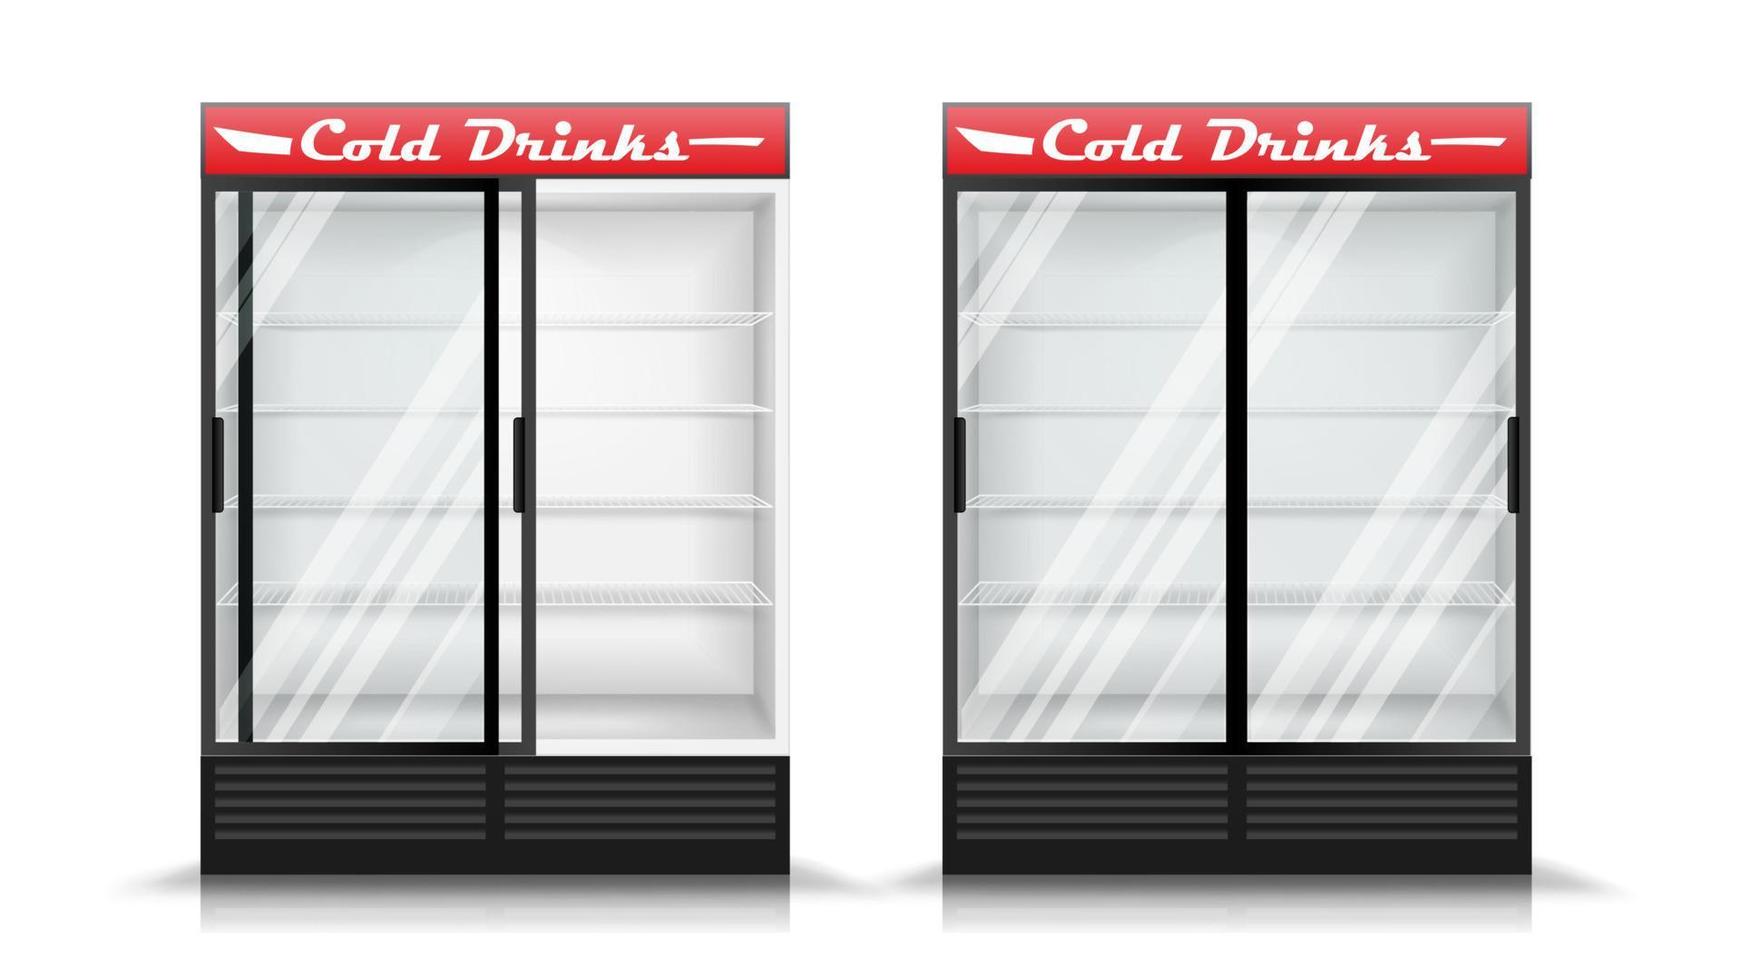 vecteur réaliste de réfrigérateur. réfrigérateur vertical moderne. panneau avant. deux portes vitrées coulissantes. illustration isolée